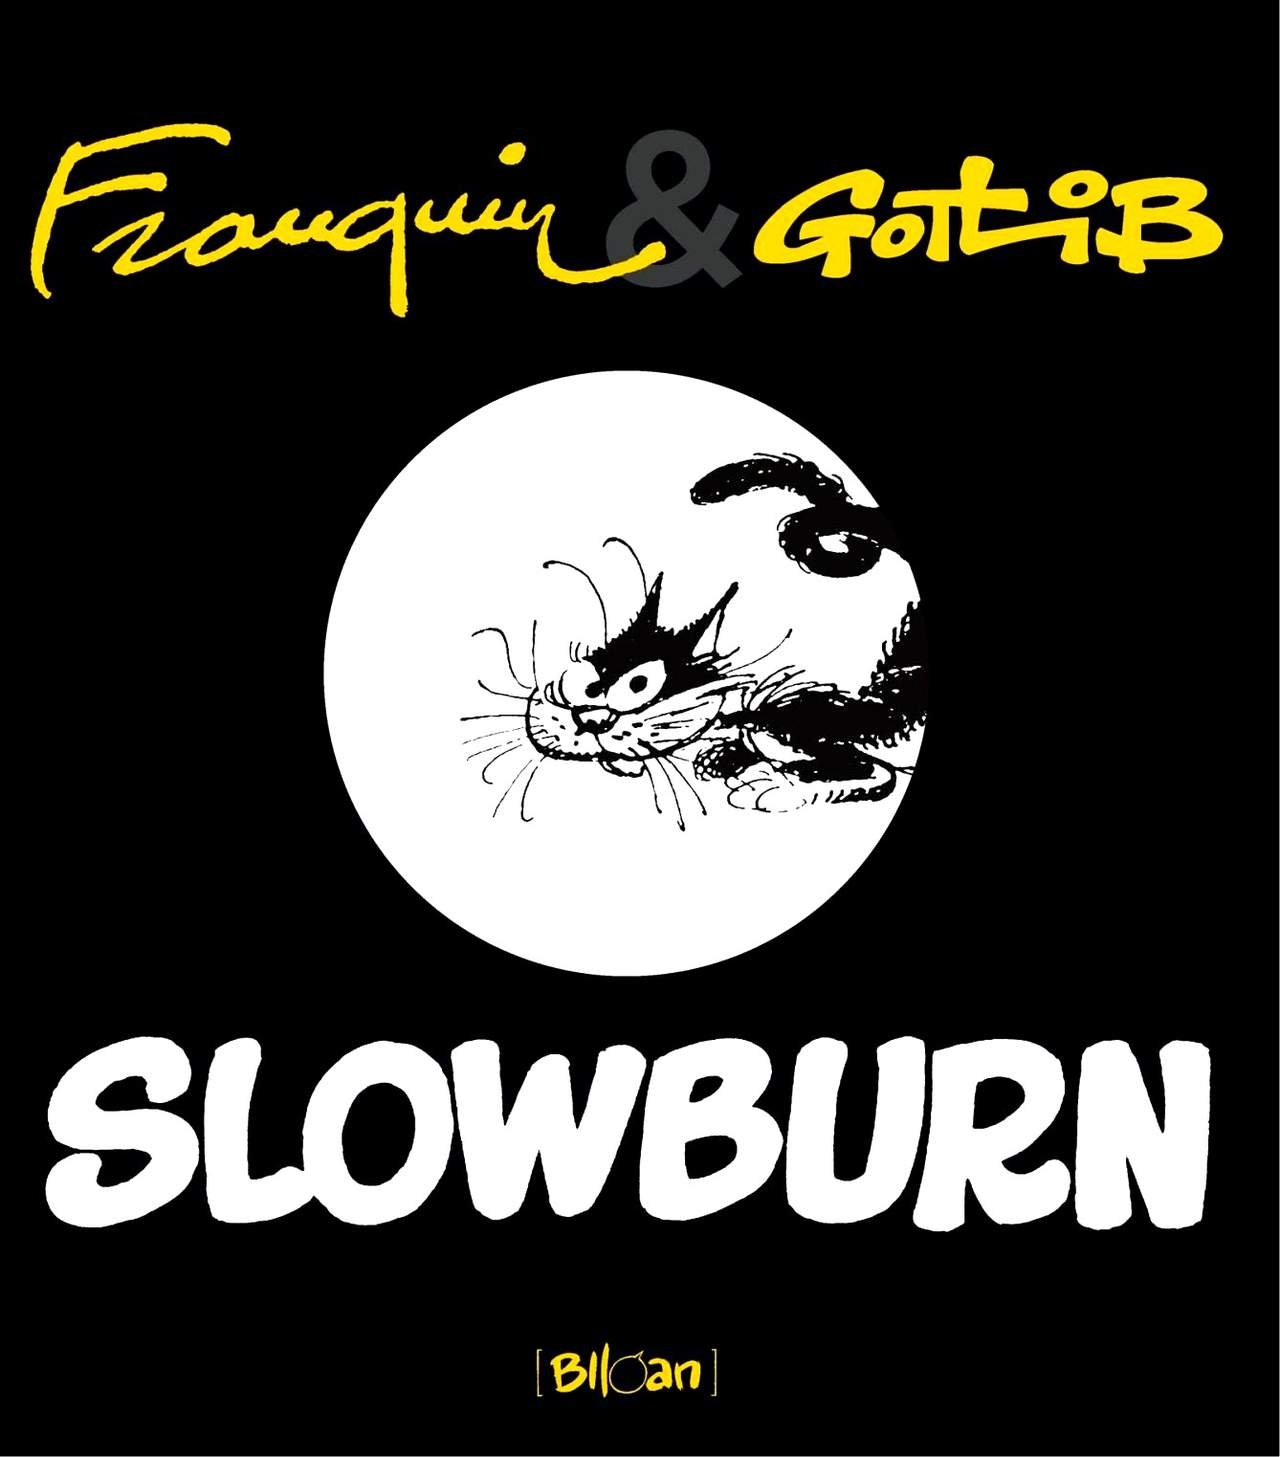 Franquin & Gotlib - Slowburn (Dutch) 0